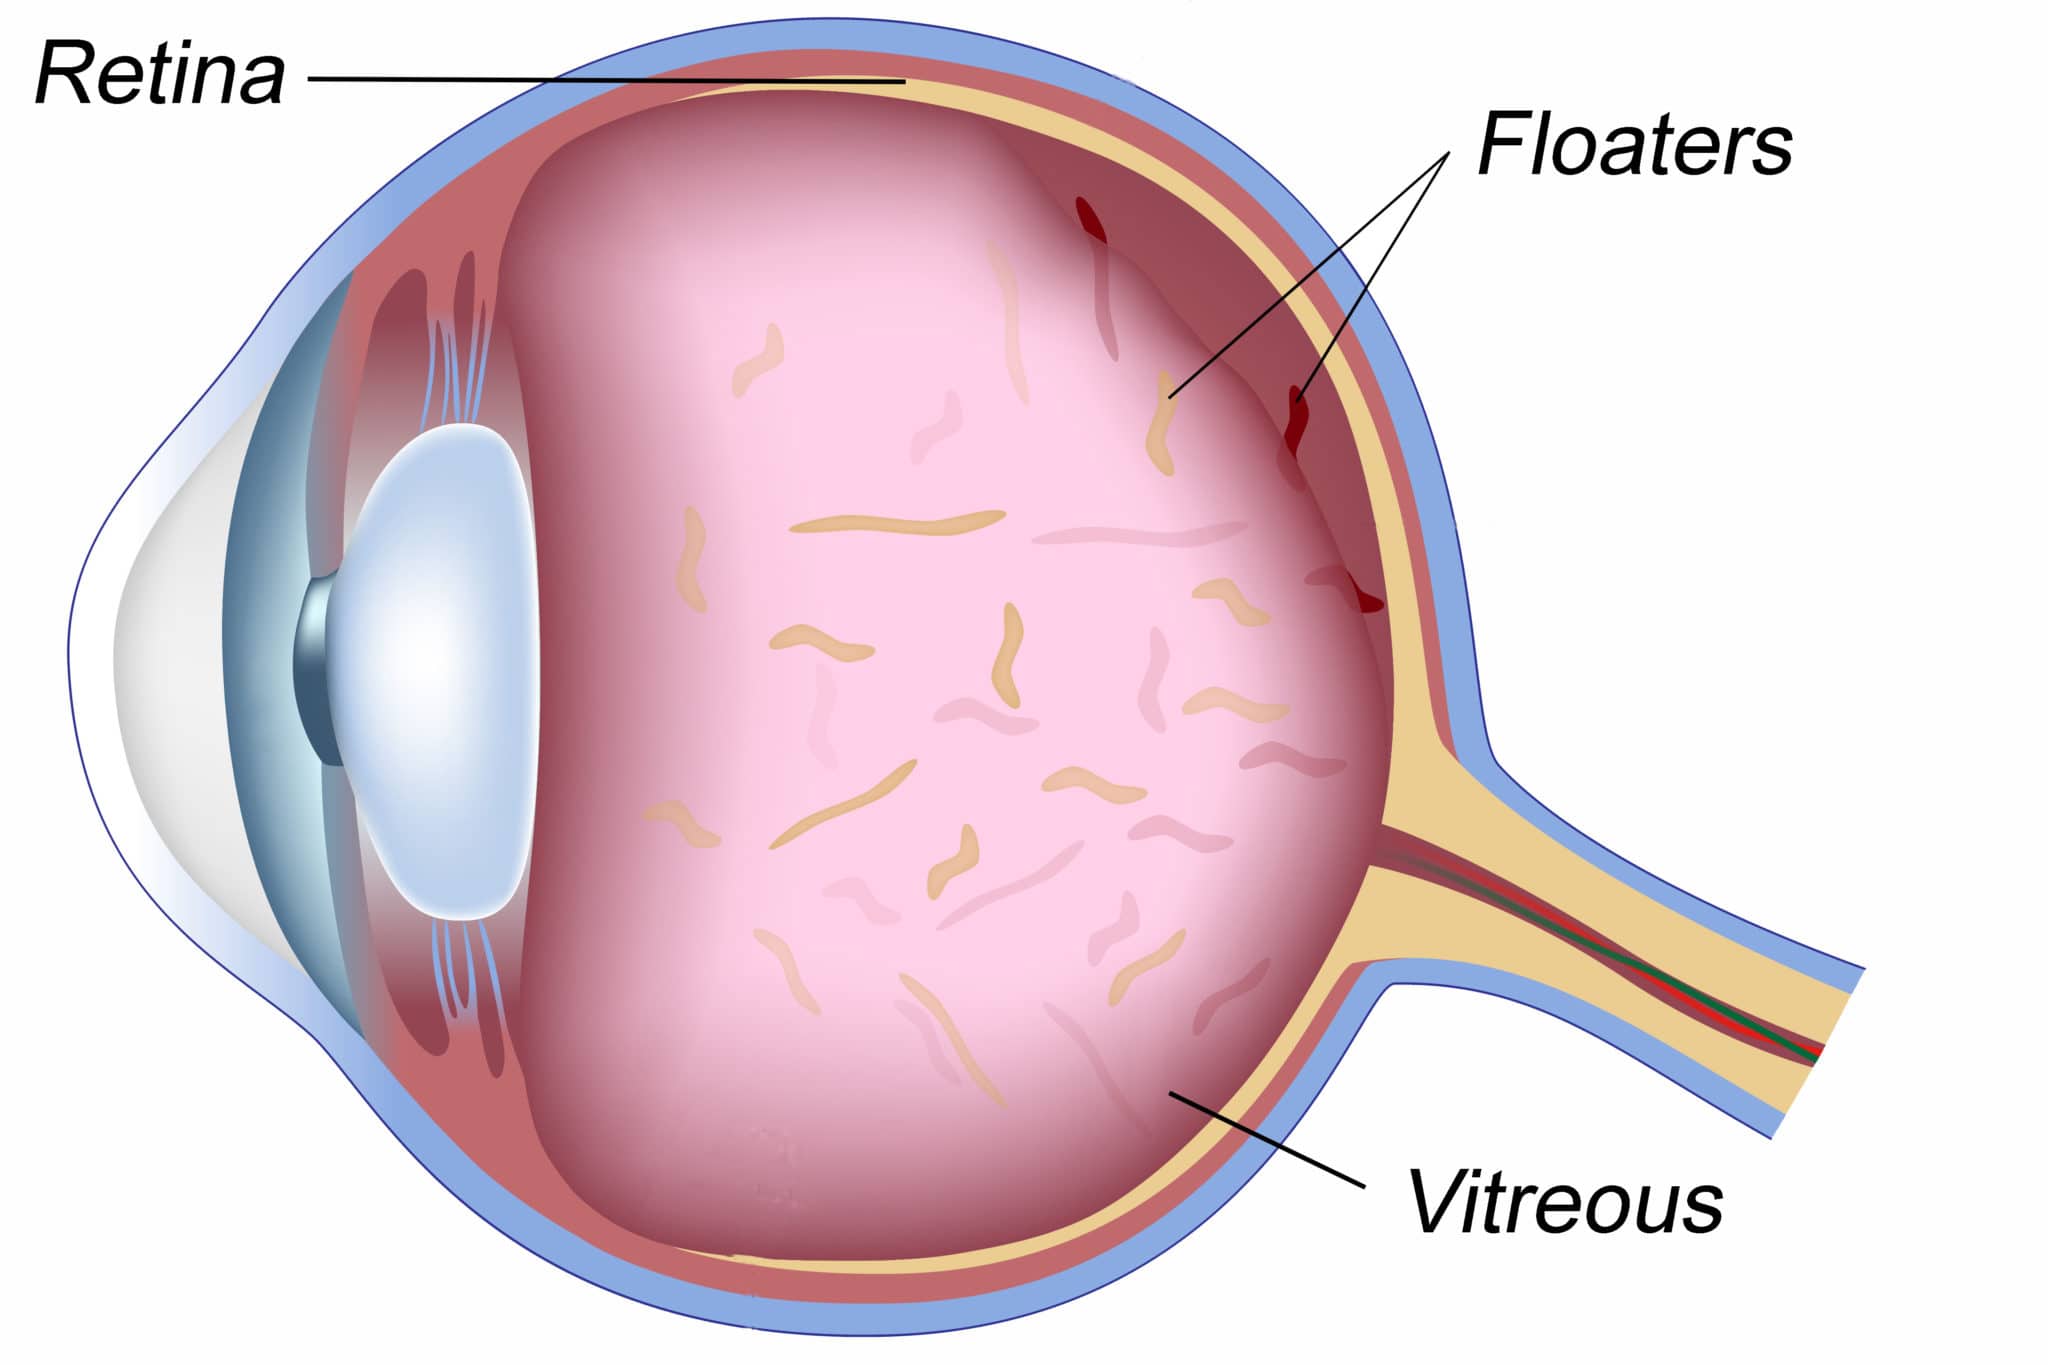 Floaters optical optometrist healthdirect